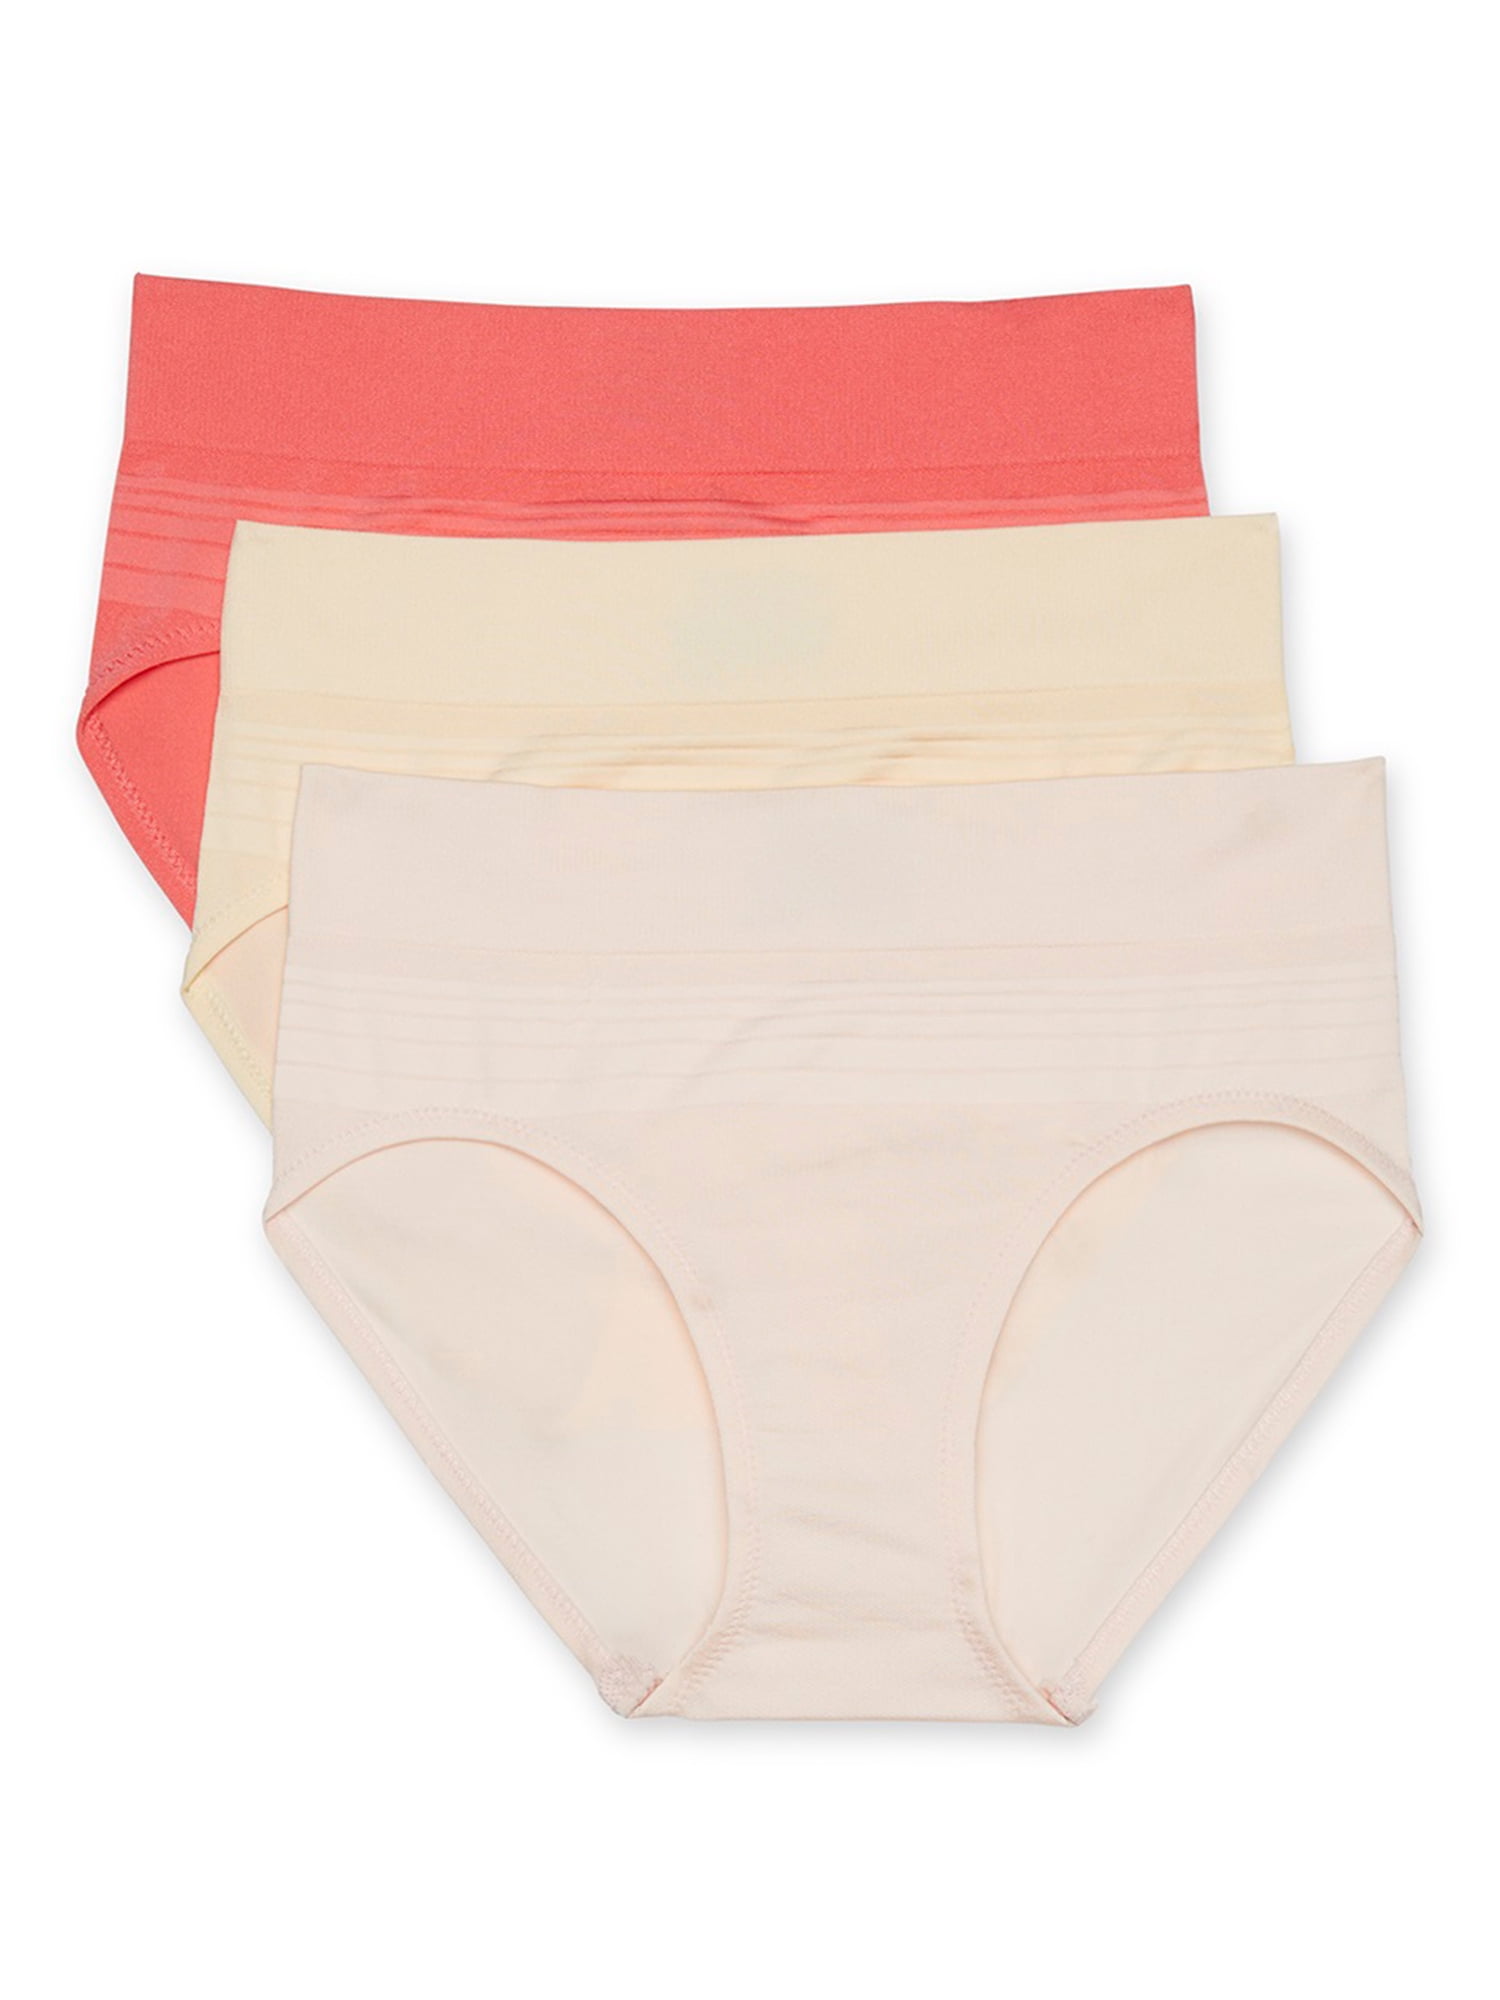 Warners Womens Blissful Benefits Seamless Bikini Panty 3 Pack 